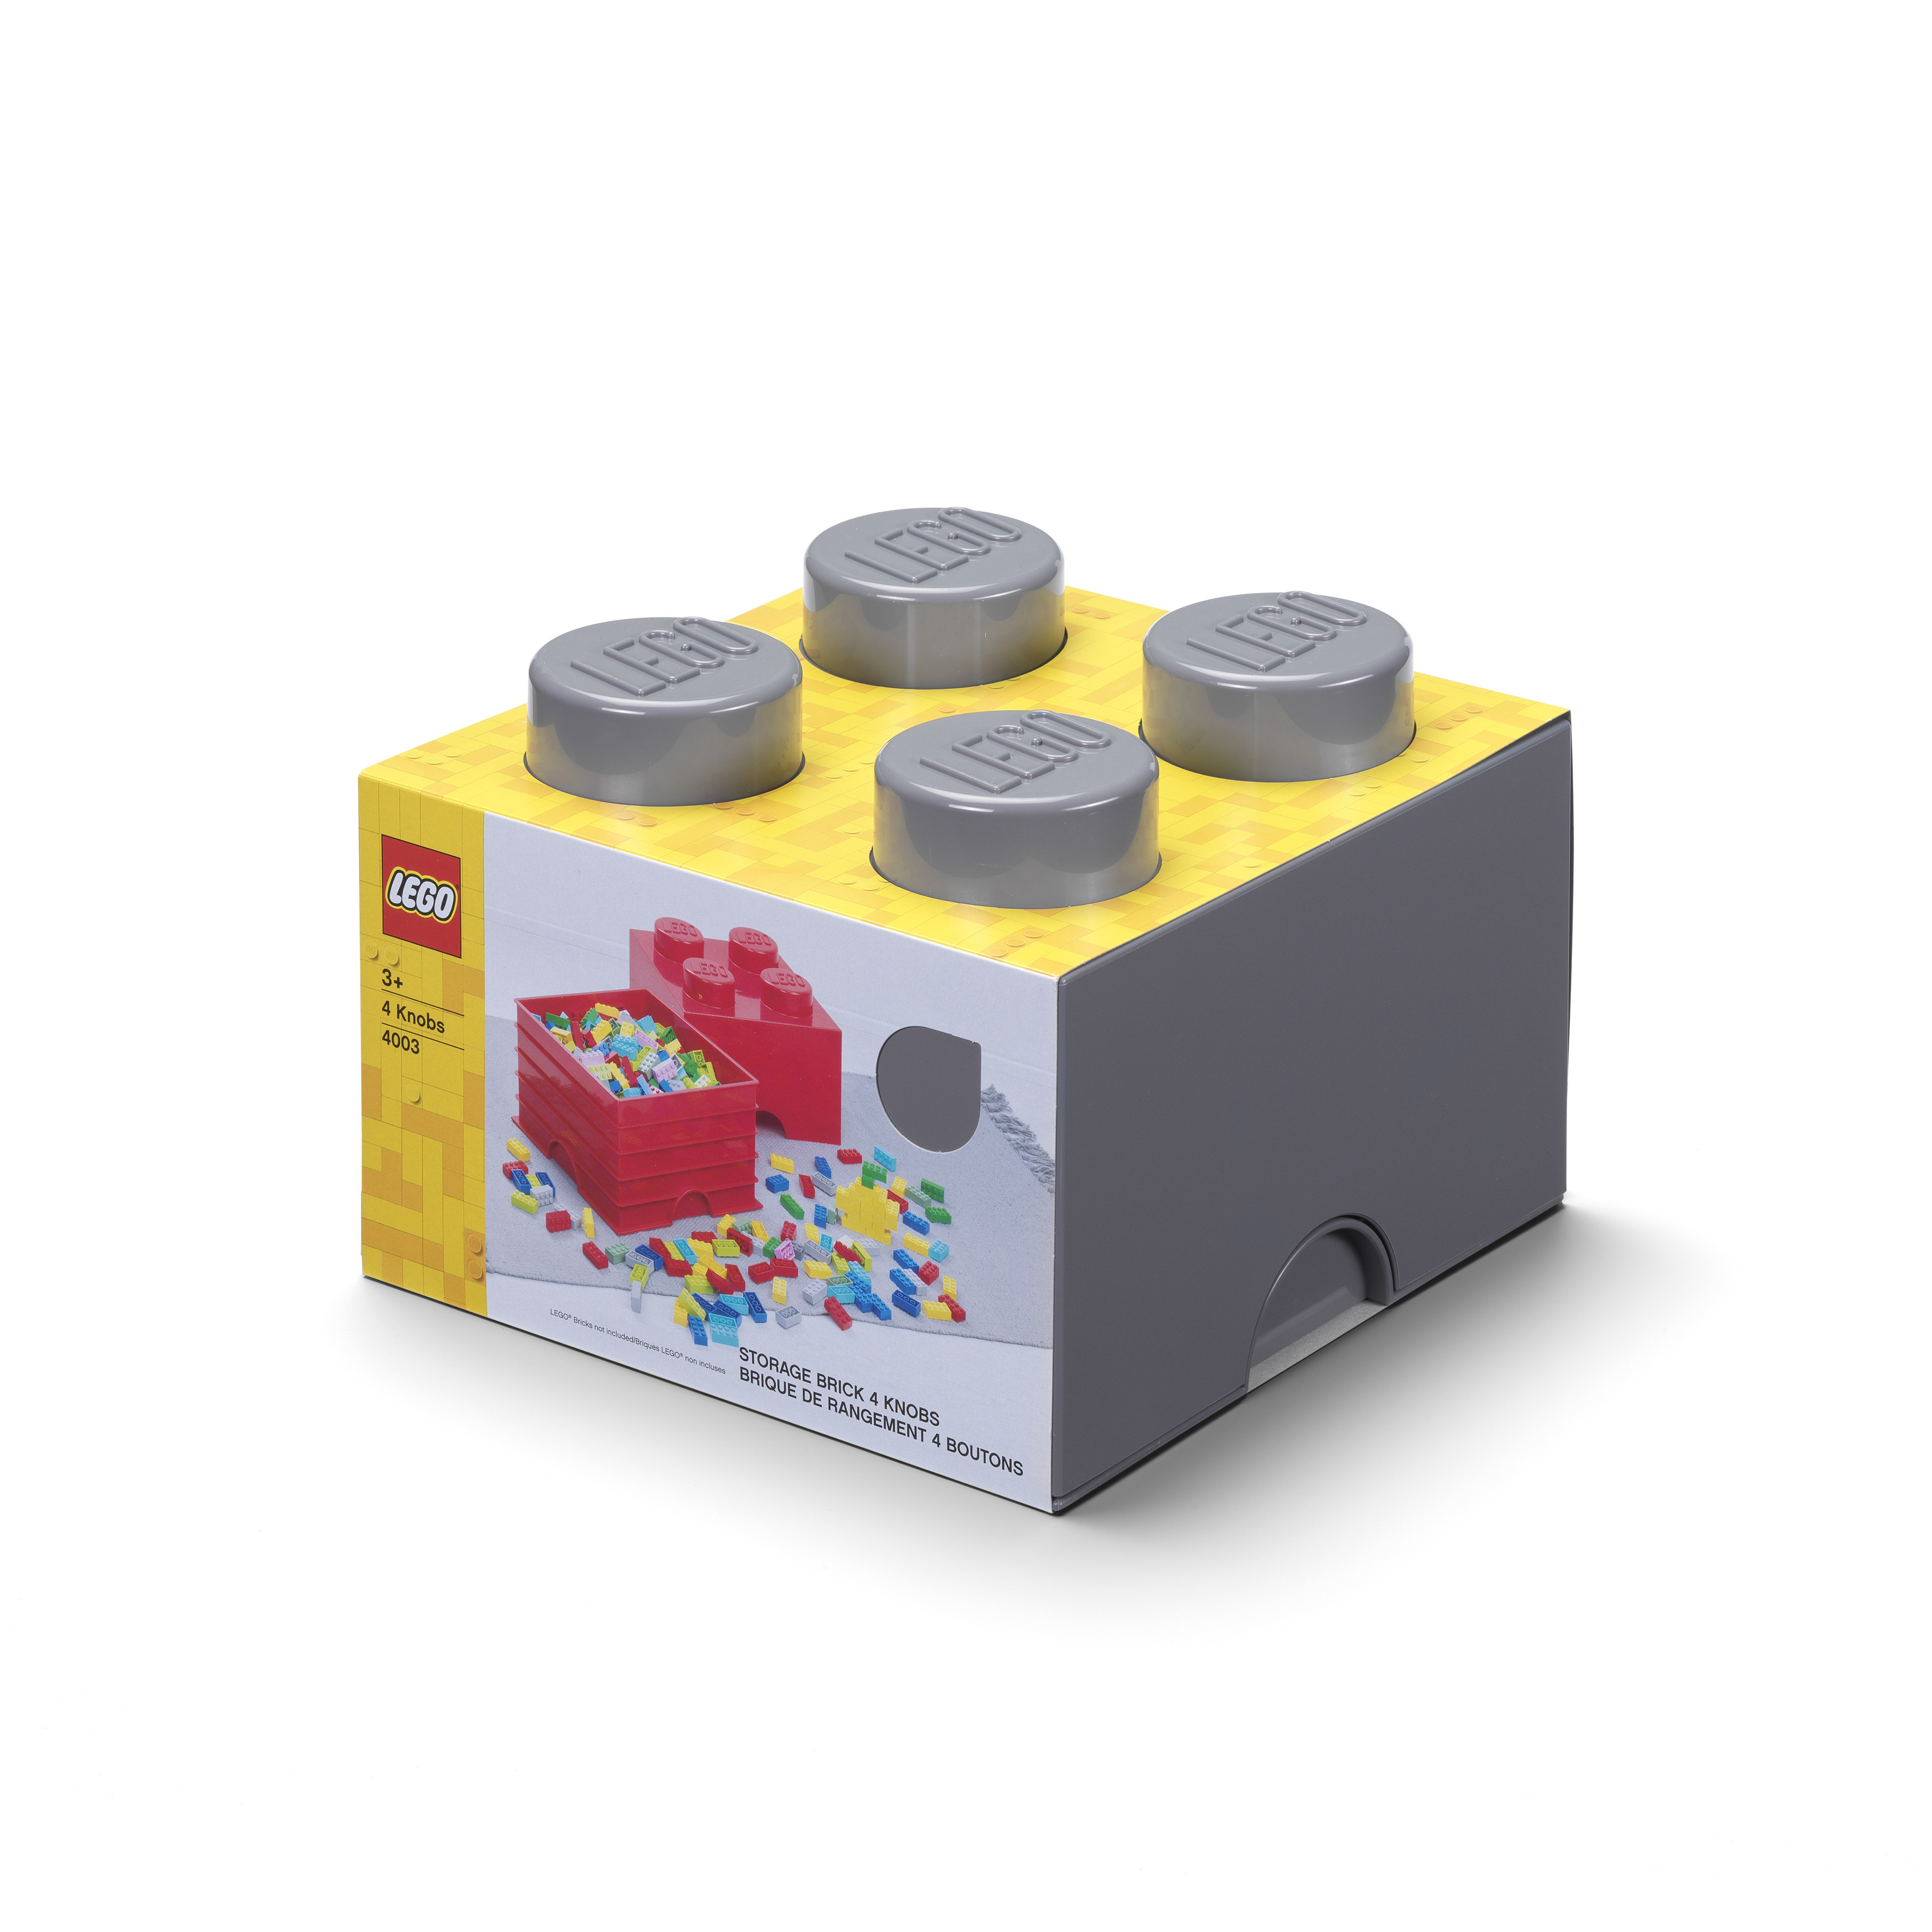 Lego Collection En Bois Boîte De Rangement 4 Tenons - Beige